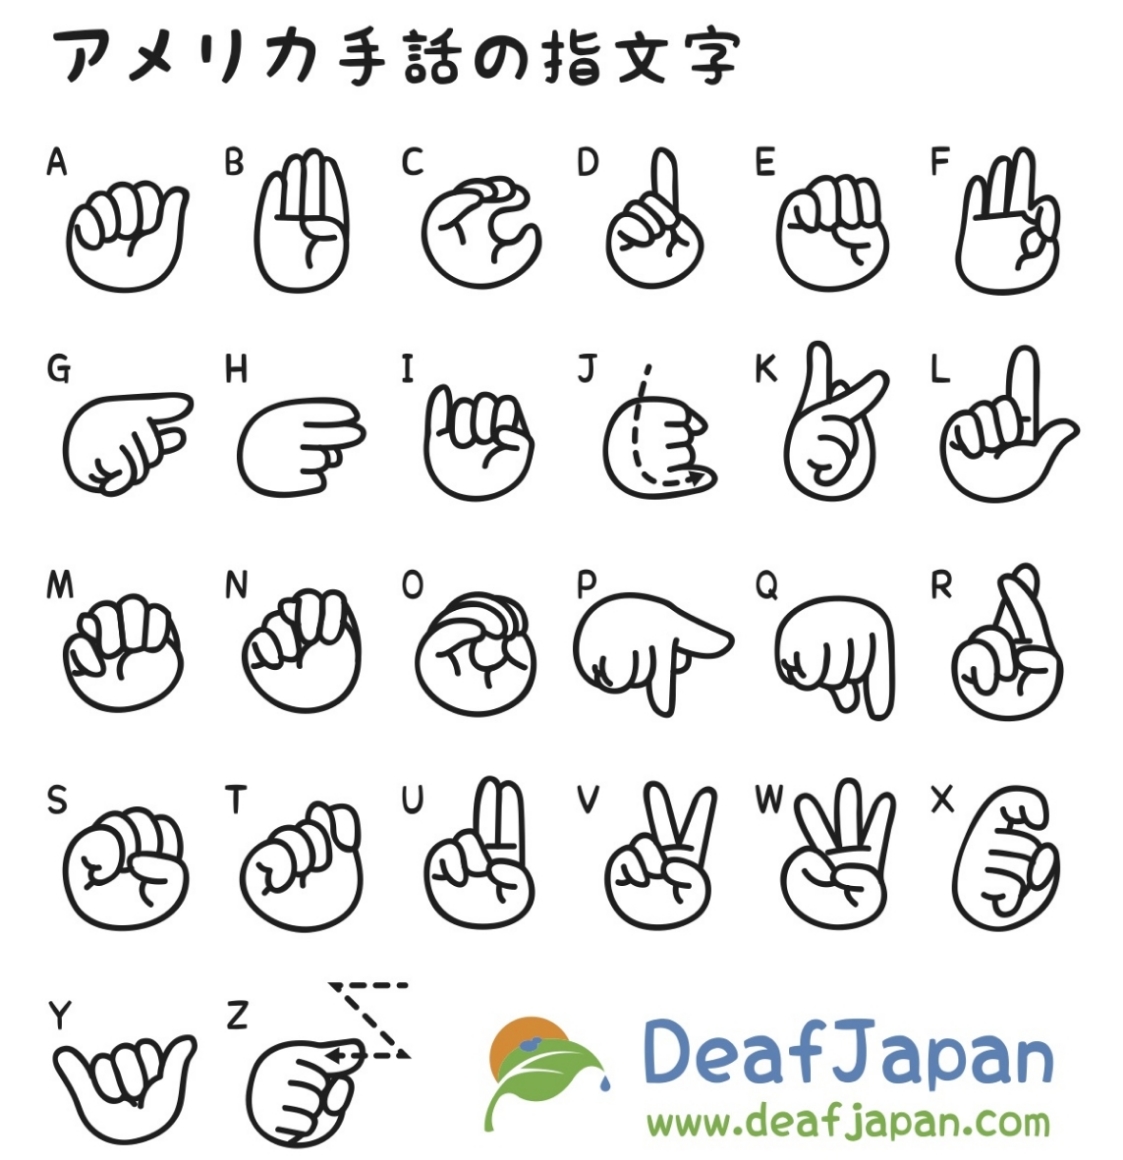 Japanese Sign Language アメリカ手話